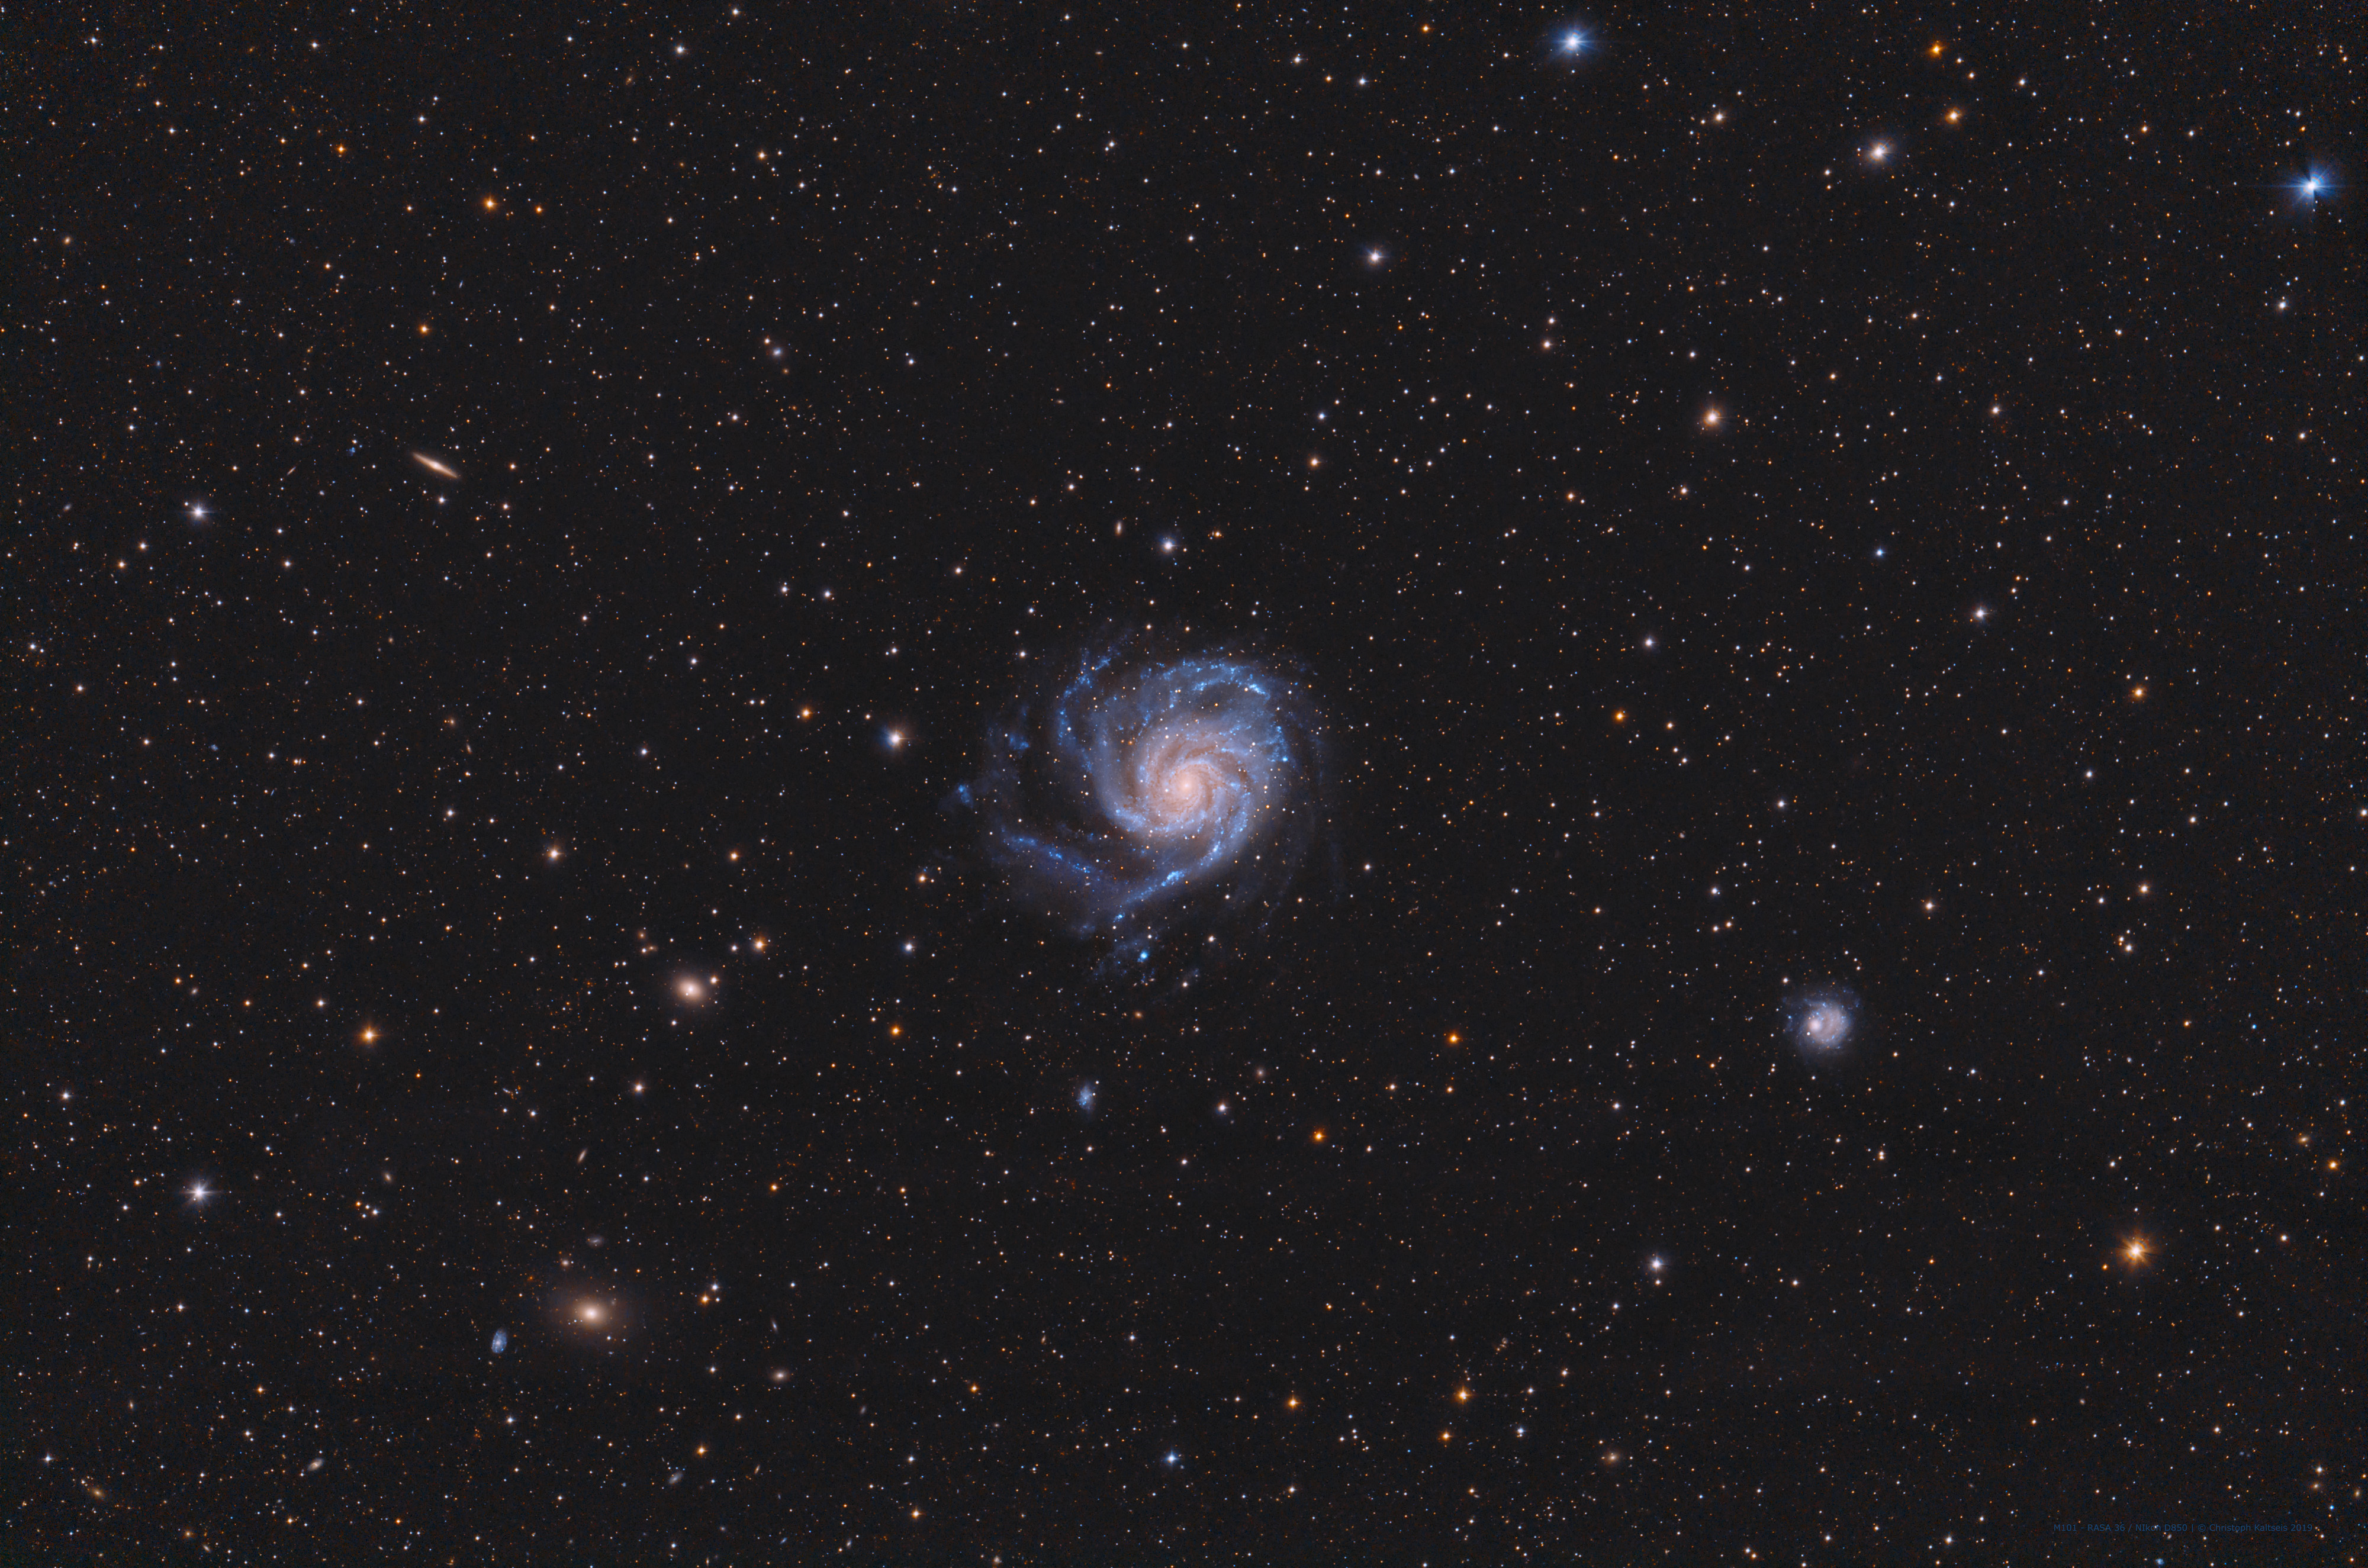   M101